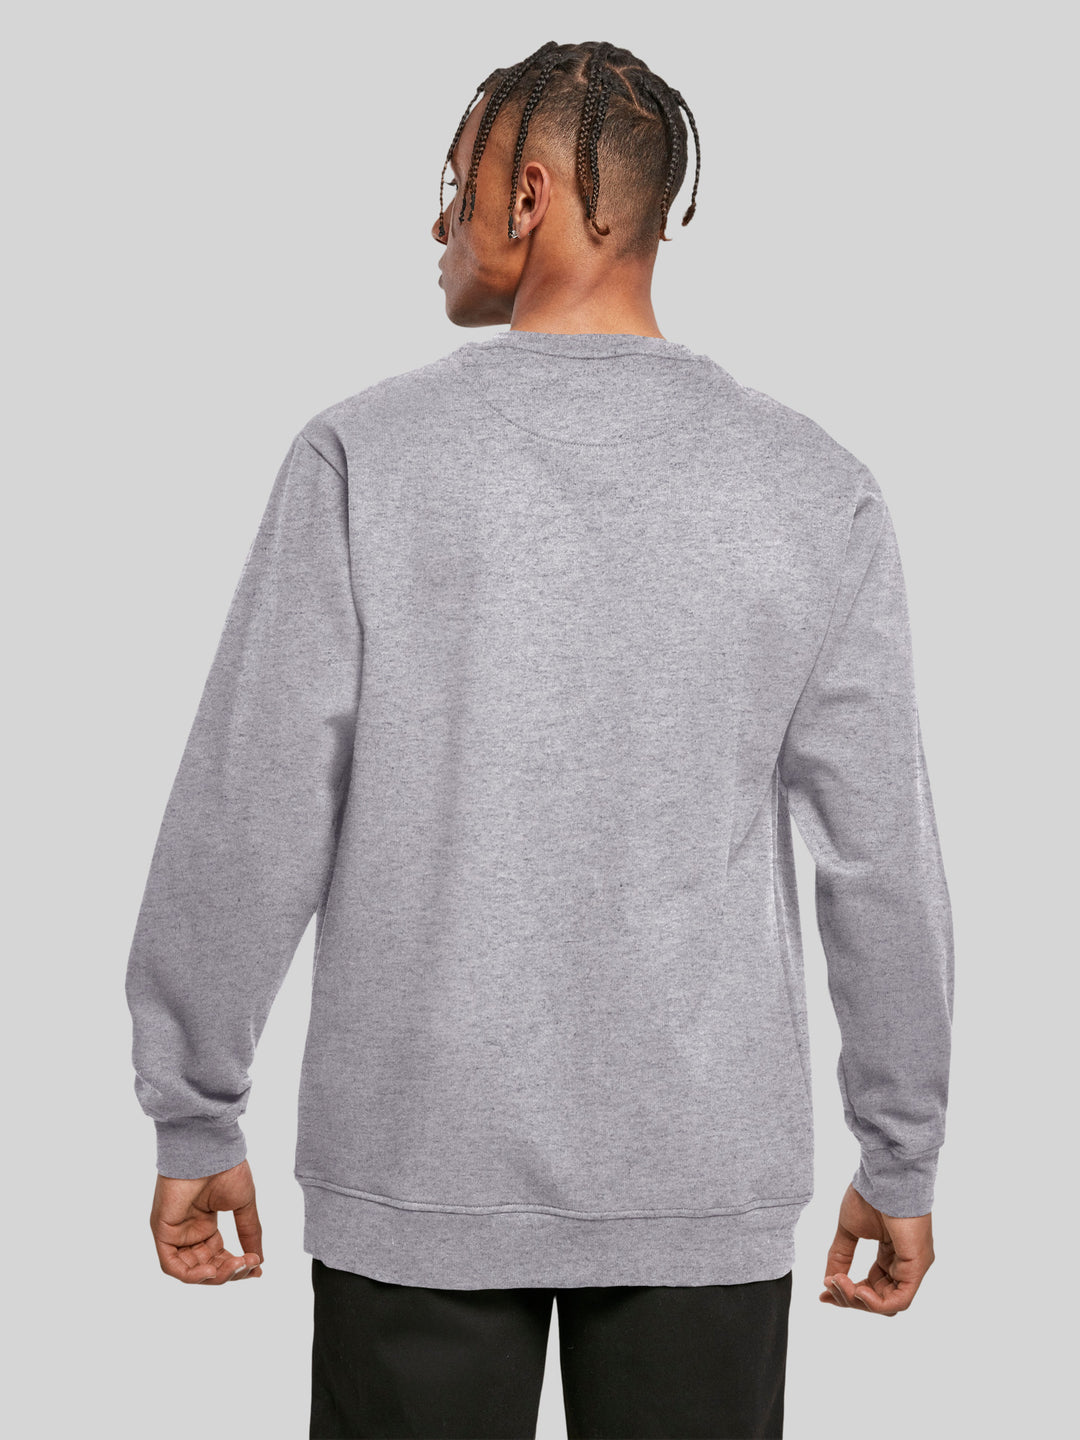 PIET | Sweatshirt Pullover Herren Seglerfahnen